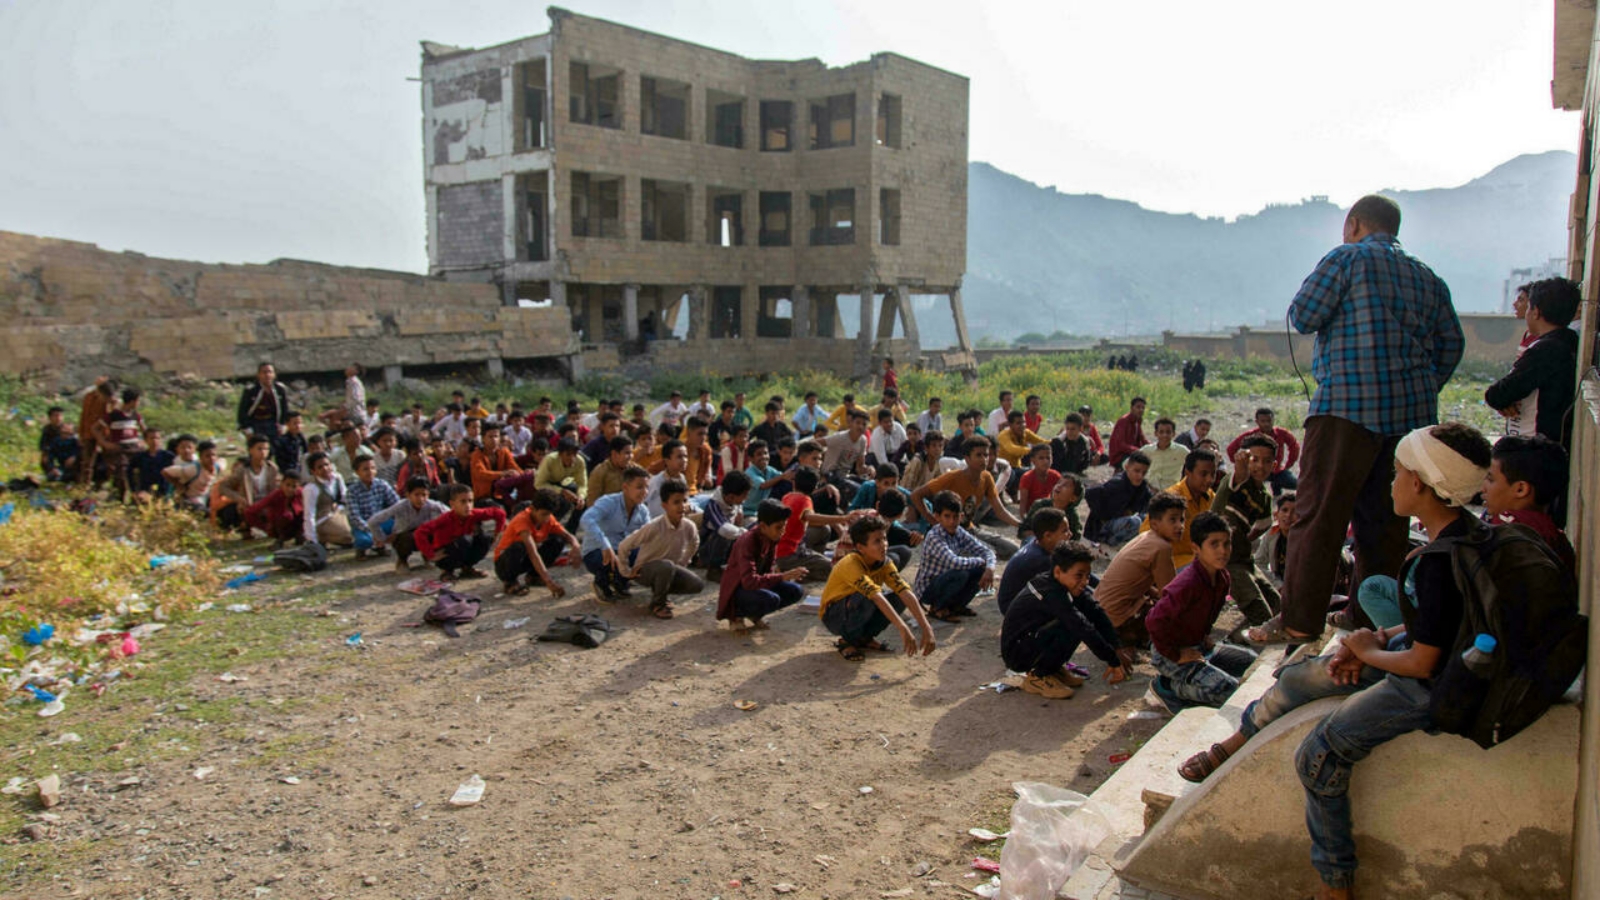 الفصول الدراسية في مدينة تعز اليمنية تُدرَّس في مبانٍ غير مكتملة أو على الأسطح أو حتى في الهواء الطلق.